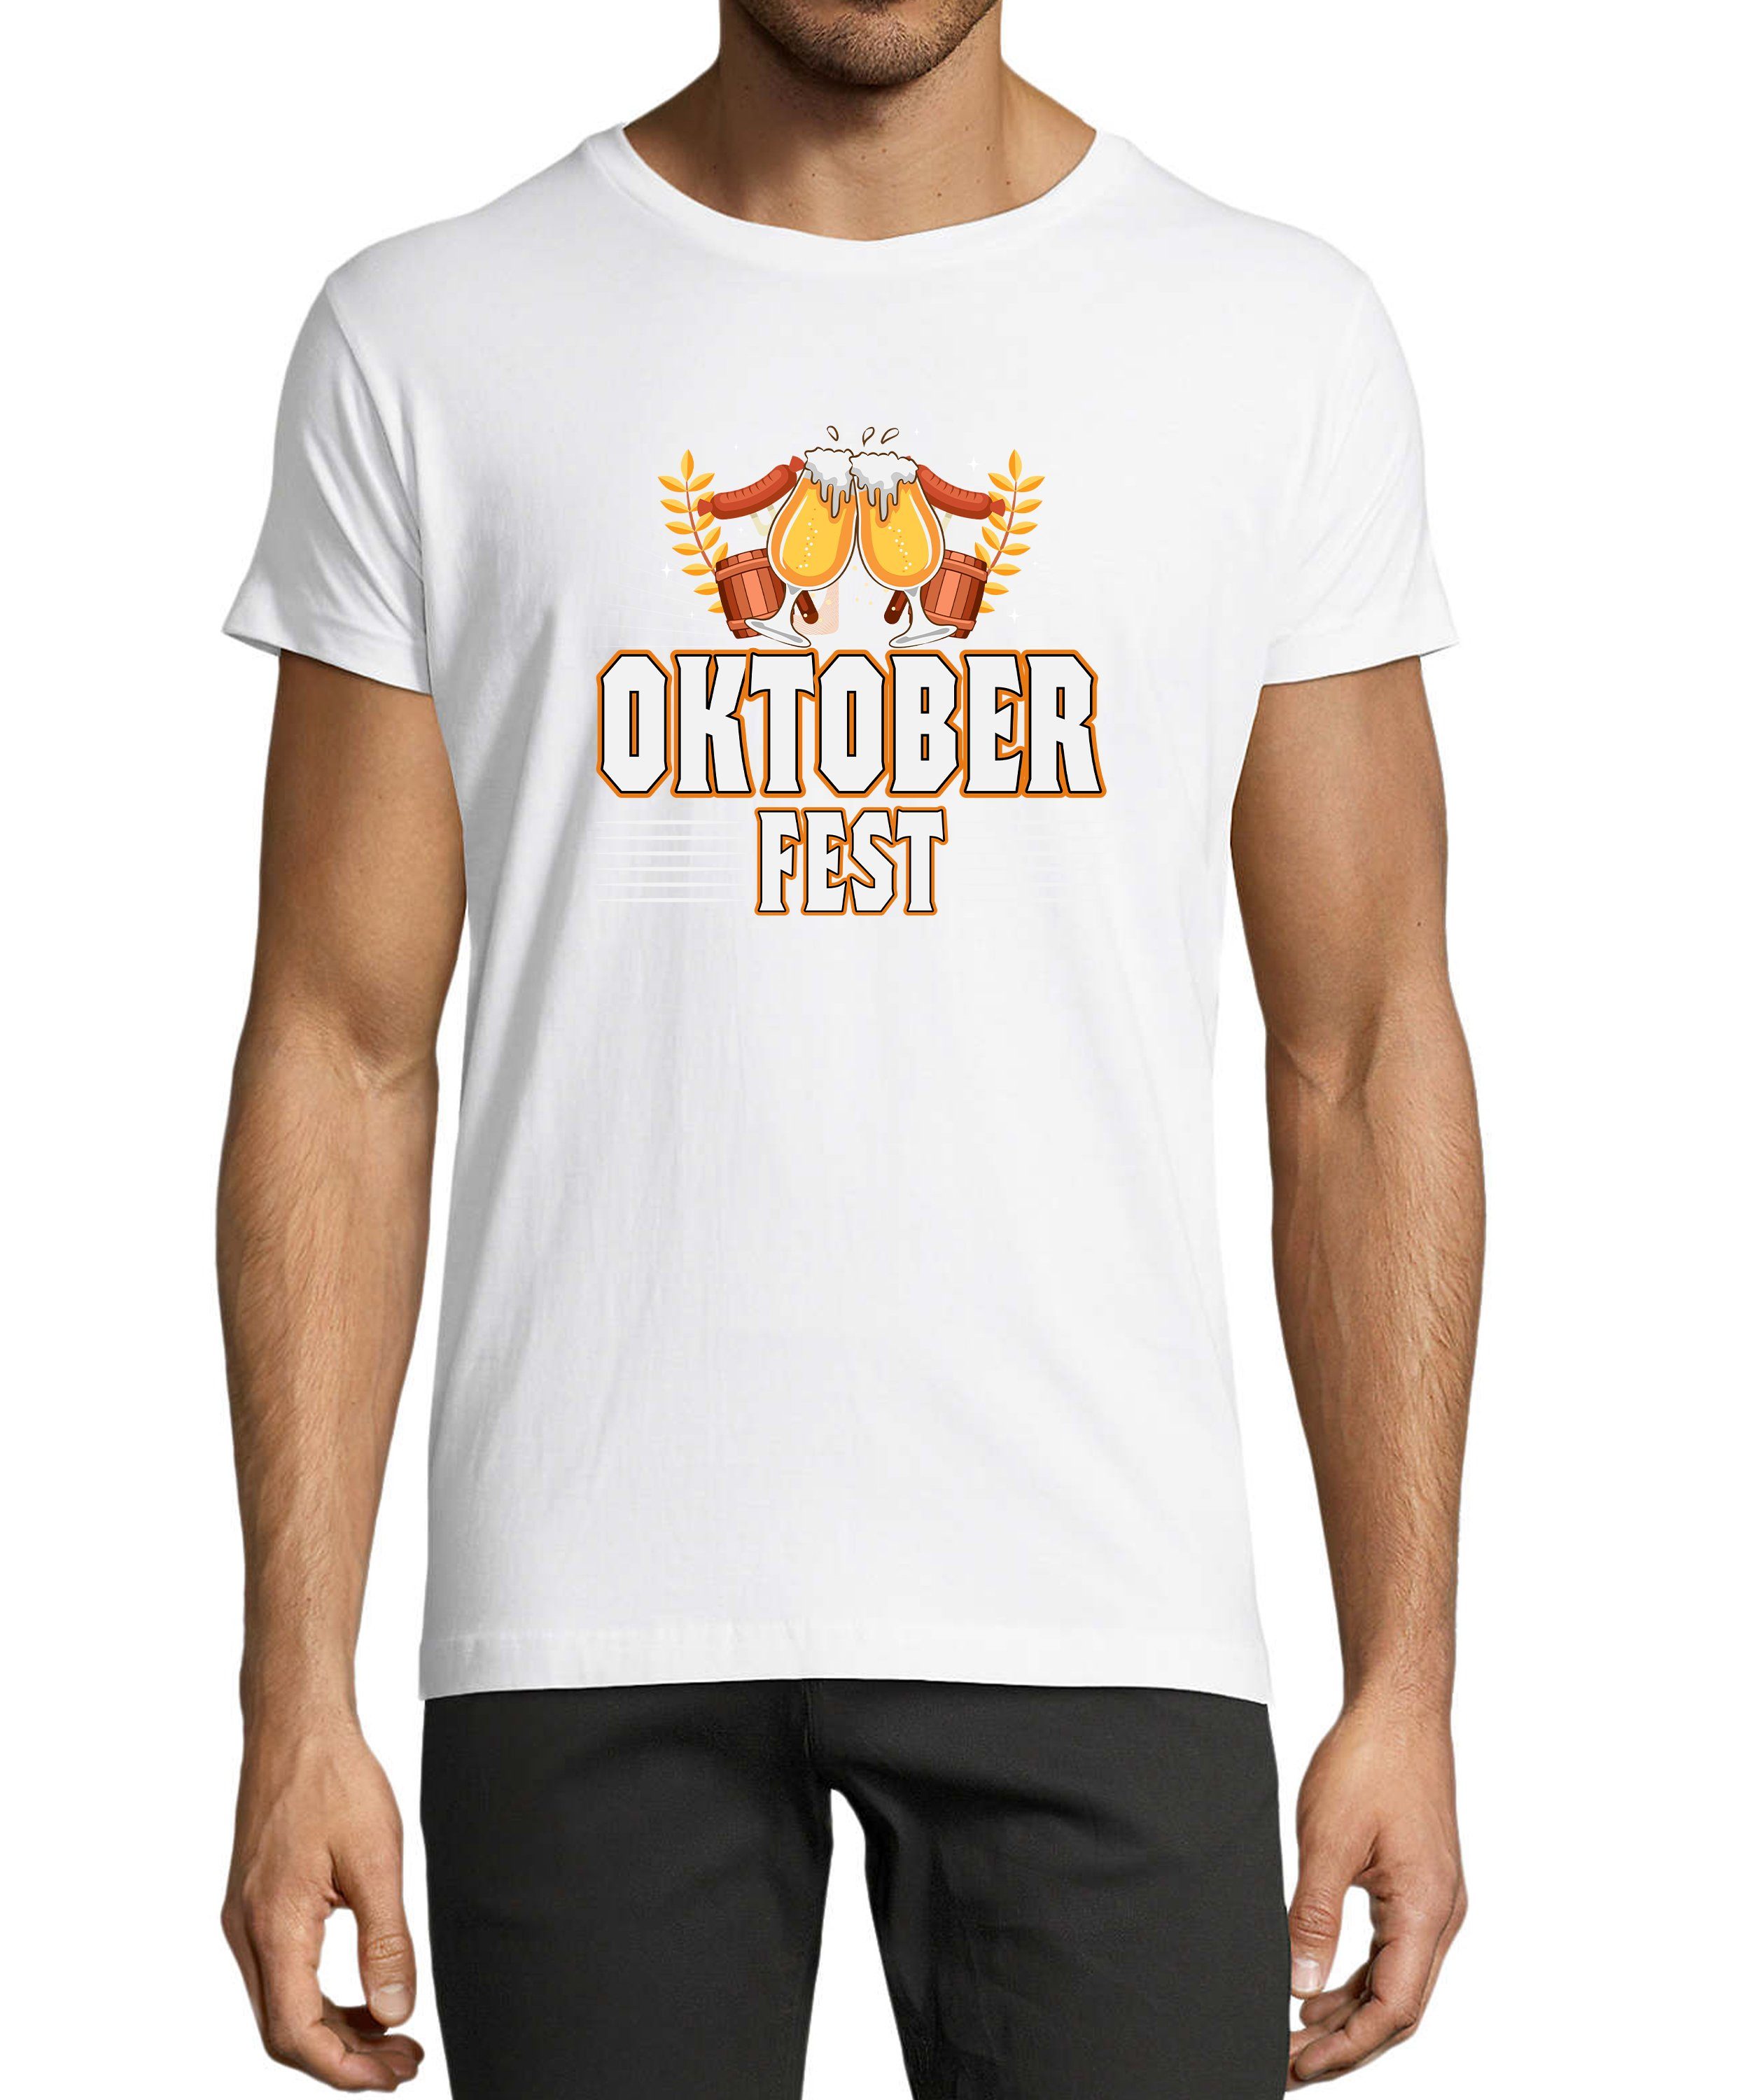 MyDesign24 T-Shirt Herren Party Shirt - Oktoberfest T-Shirt Baumwollshirt mit Aufdruck Regular Fit, i327 weiss